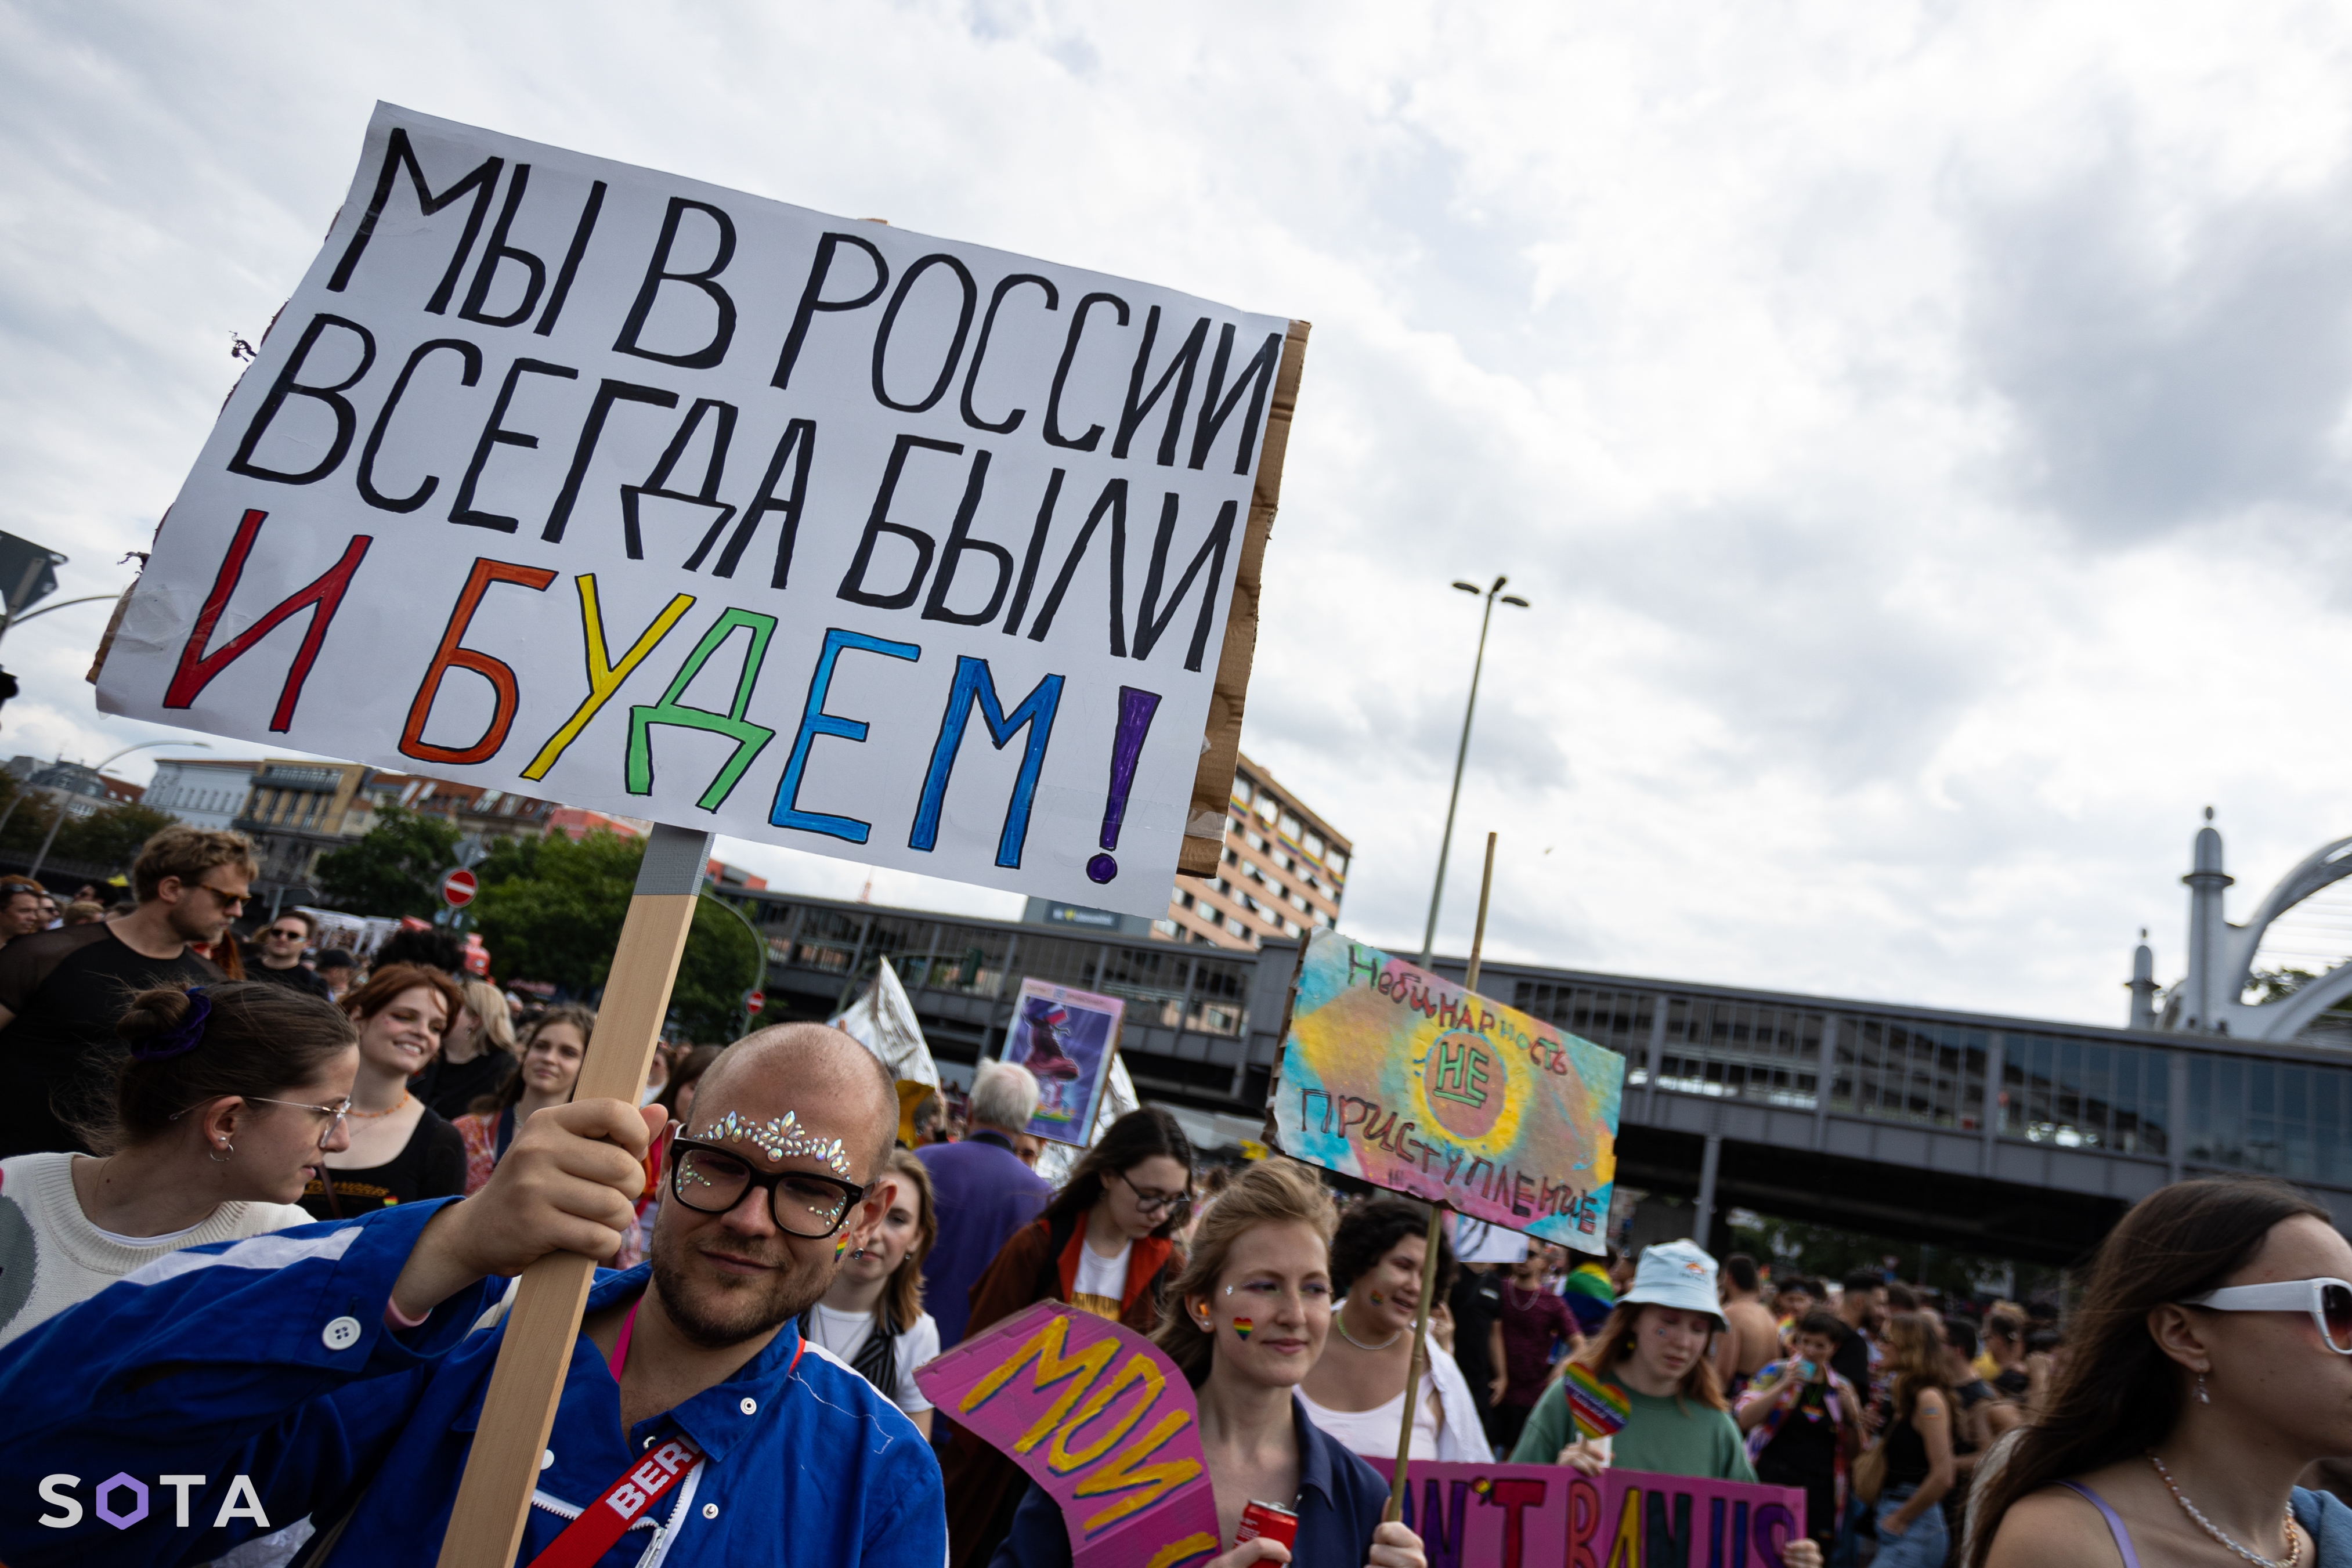 Гей-парад в Берлине, российская колонна
Руслан Терехов / SOTA